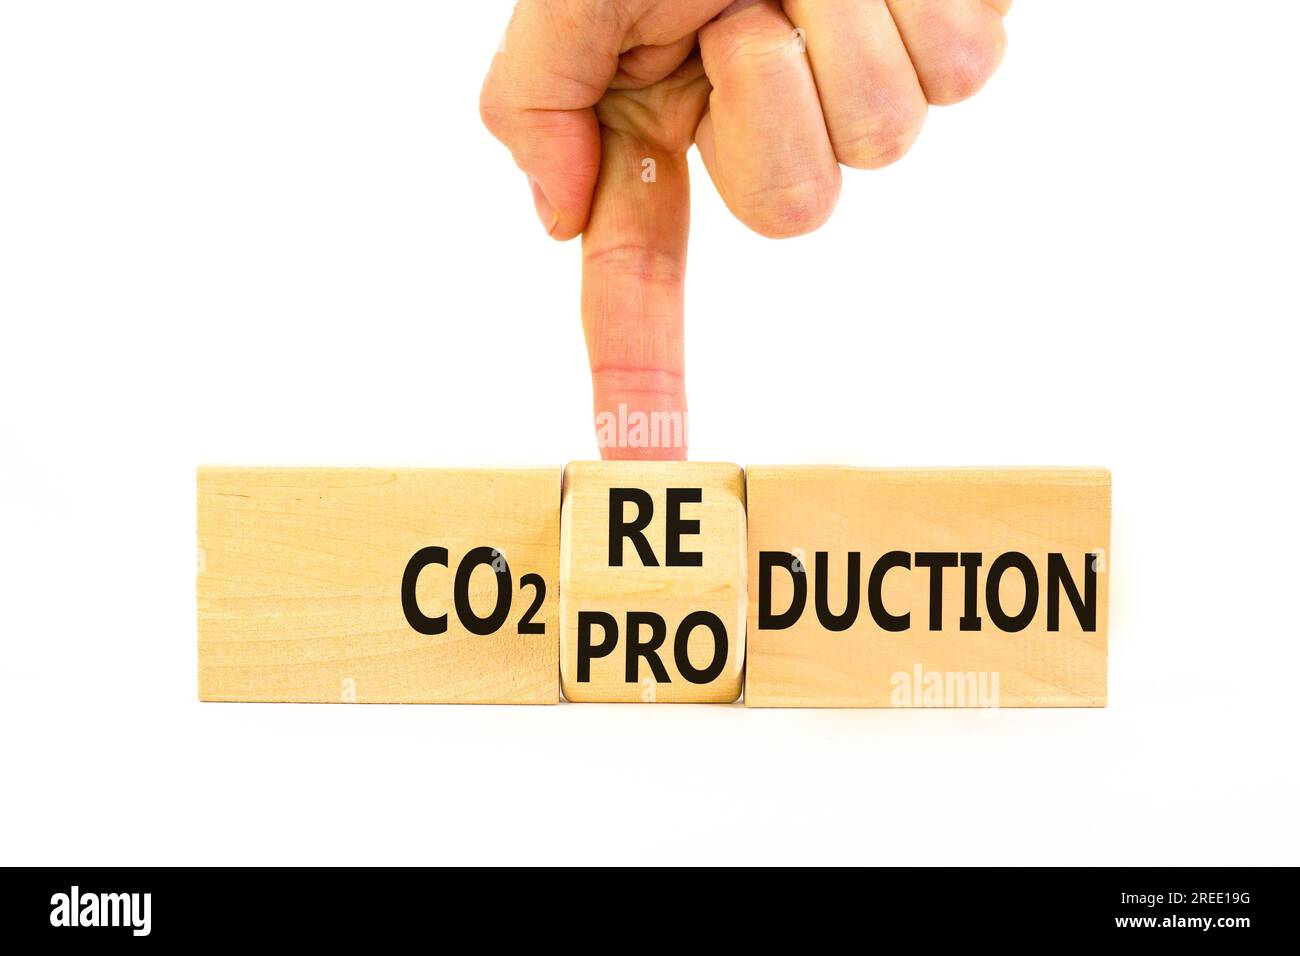 CO2 Symbol für Produktion oder Reduzierung. Konzeptwort CO2 Produktionsreduktion auf einem Holzblock auf einem wunderschönen weißen Hintergrund. Geschäftsmannshand. Geschäfte Stockfoto